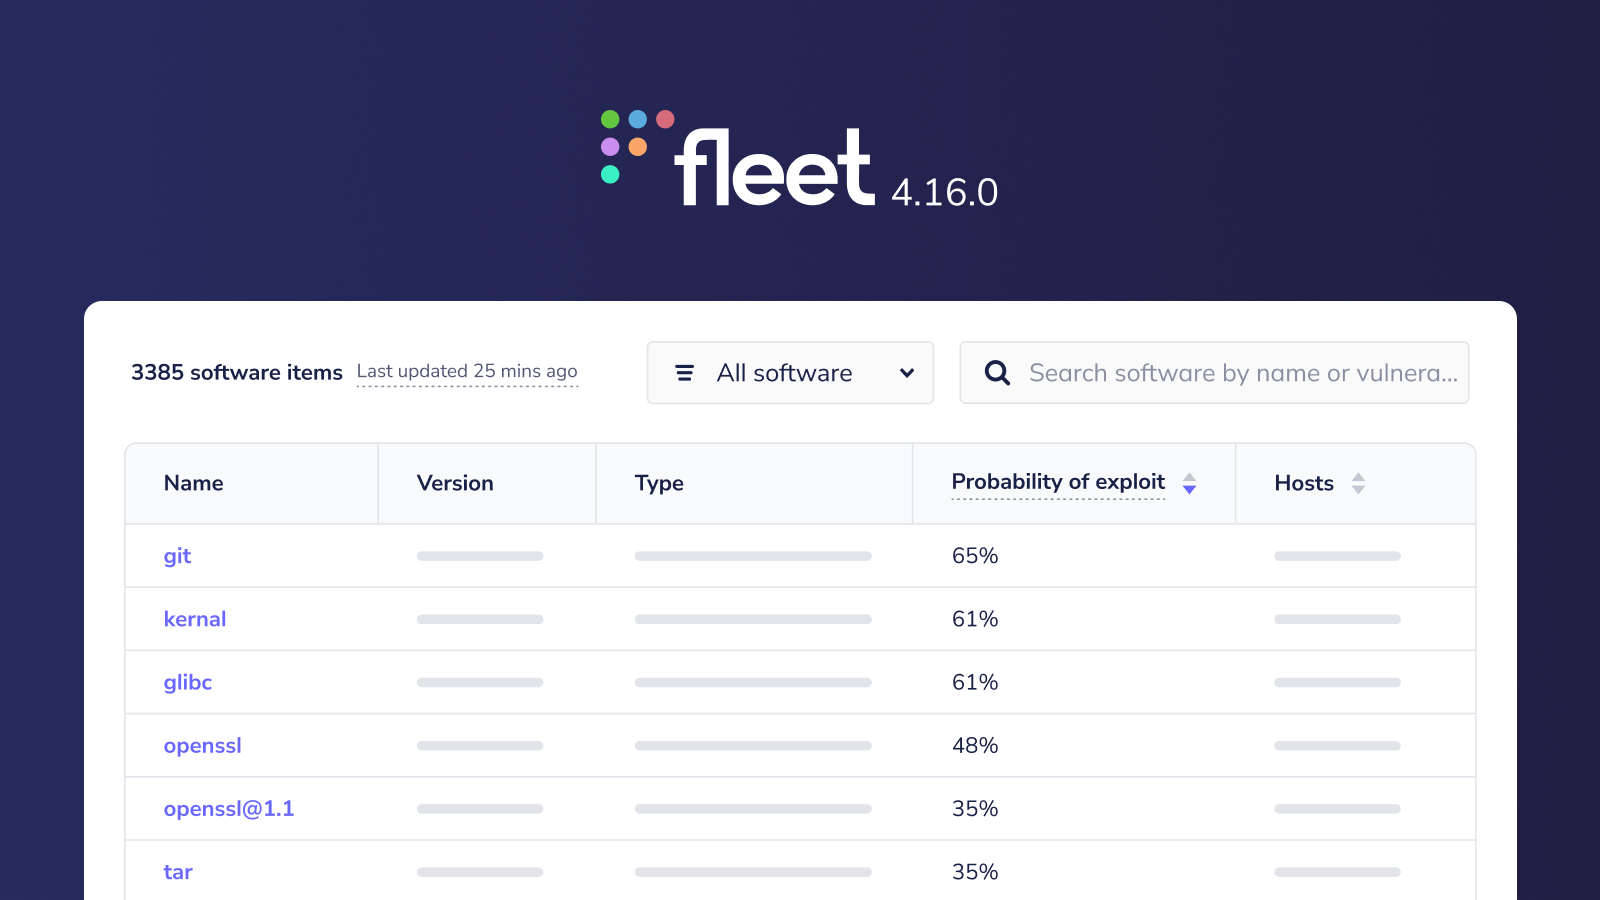 Fleet 4.16.0